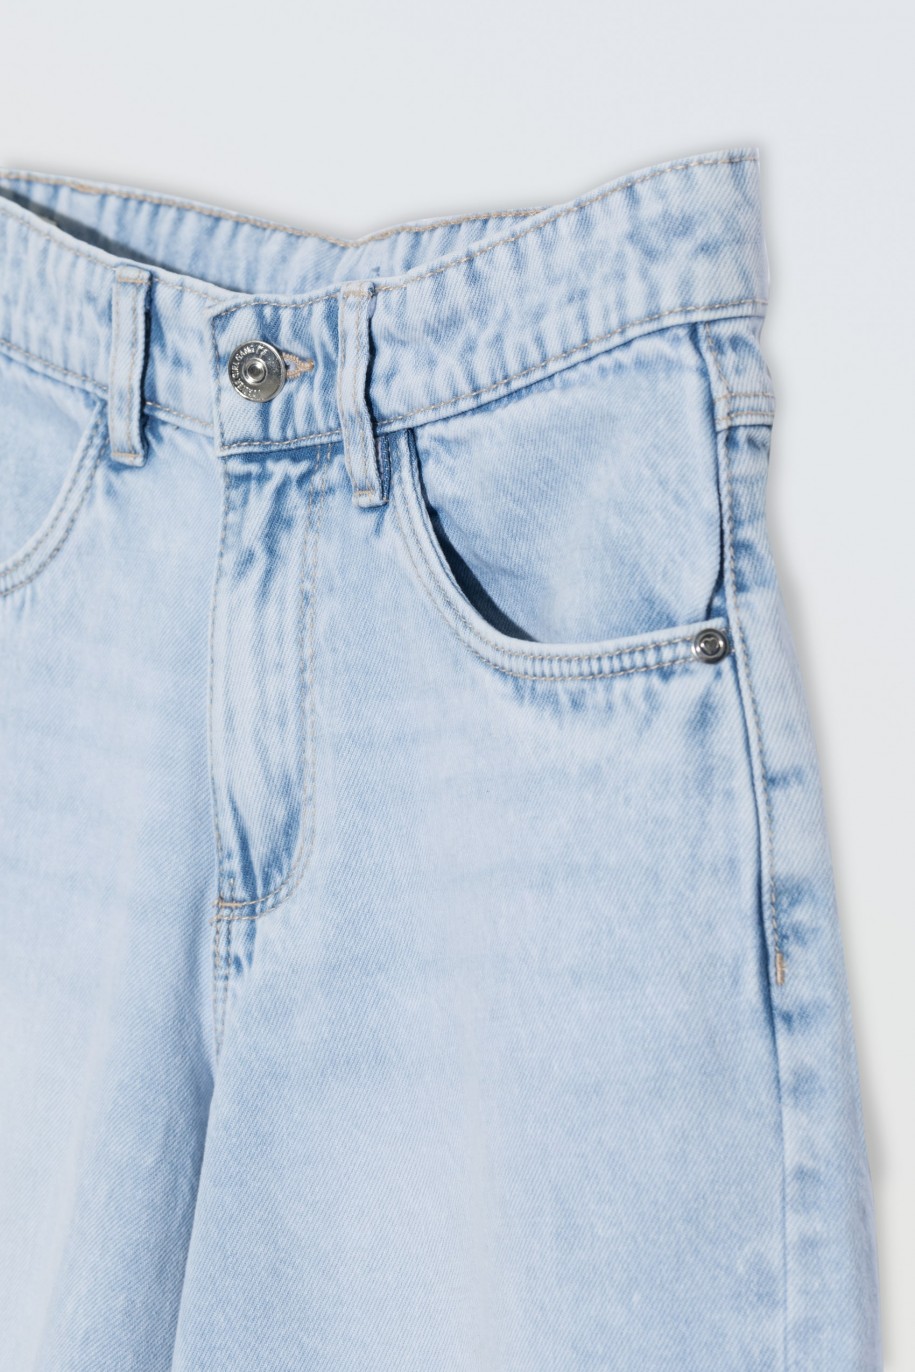 Jasnoniebieskie krótkie spodenki jeansowe - 46571